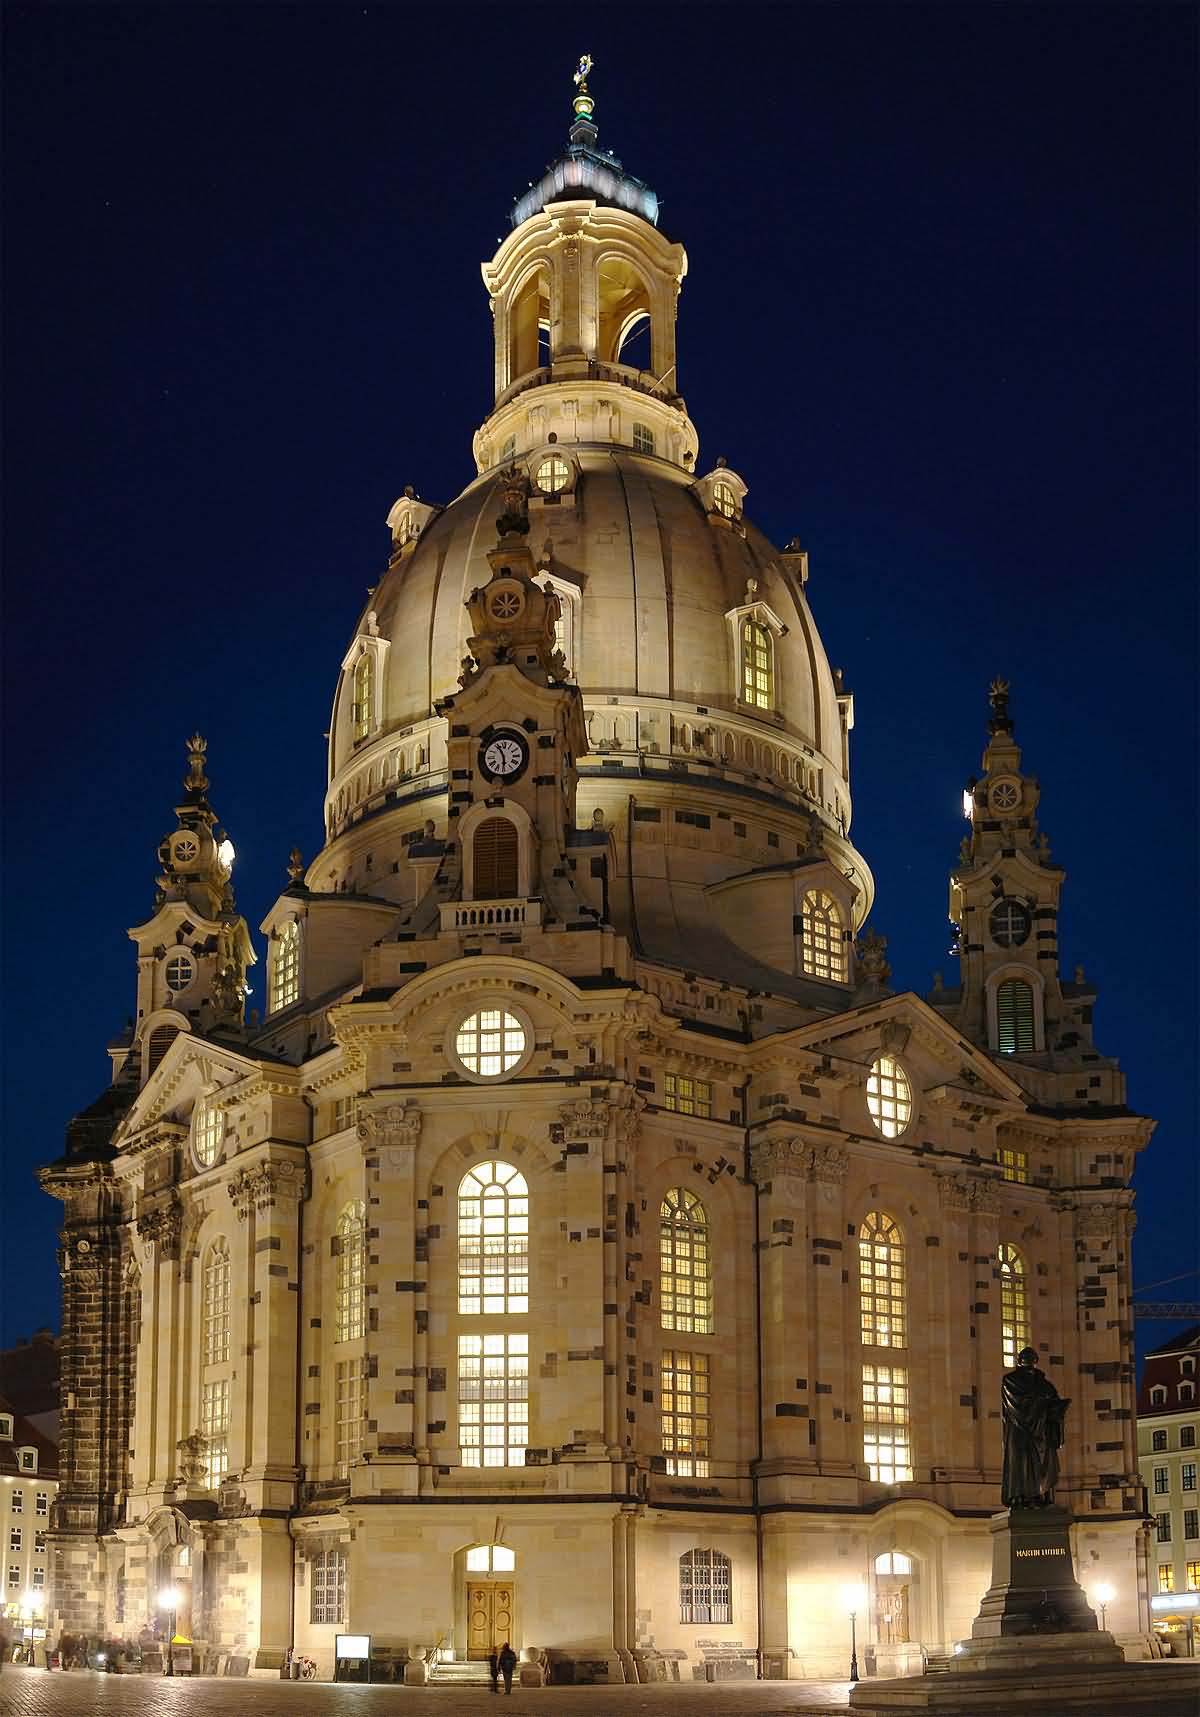 Dresden Frauenkirche night view